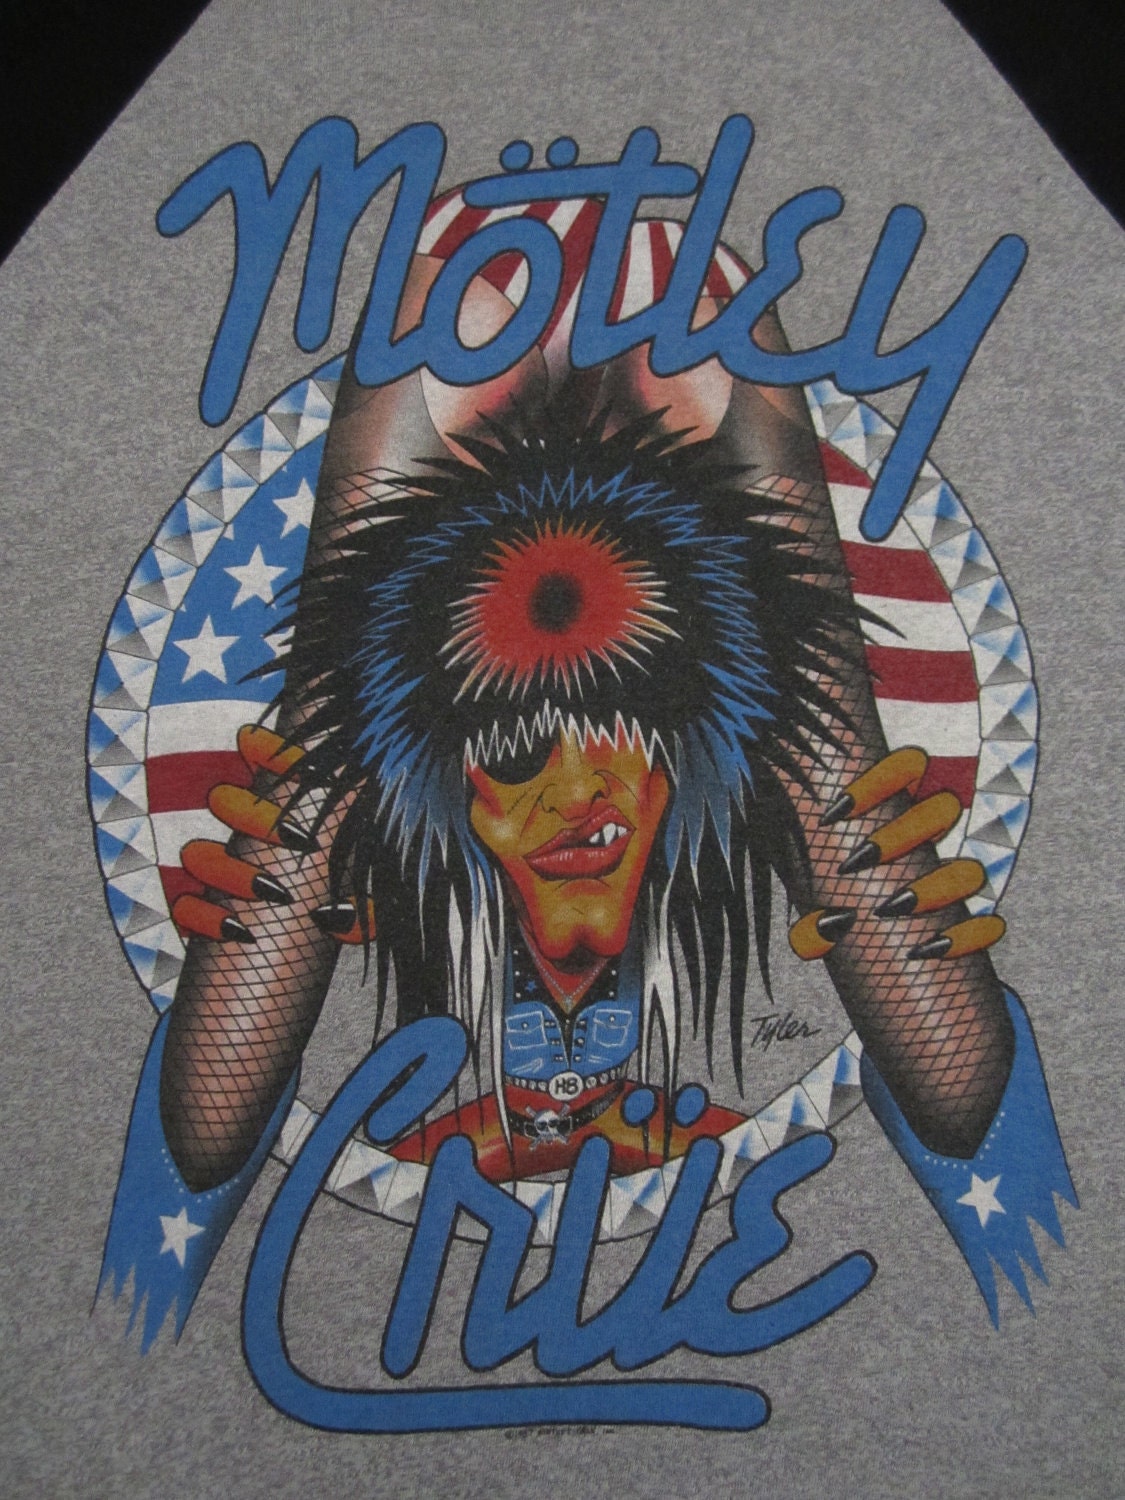 Original MOTLEY CRUE vintage 1987 tour T SHIRT jersey